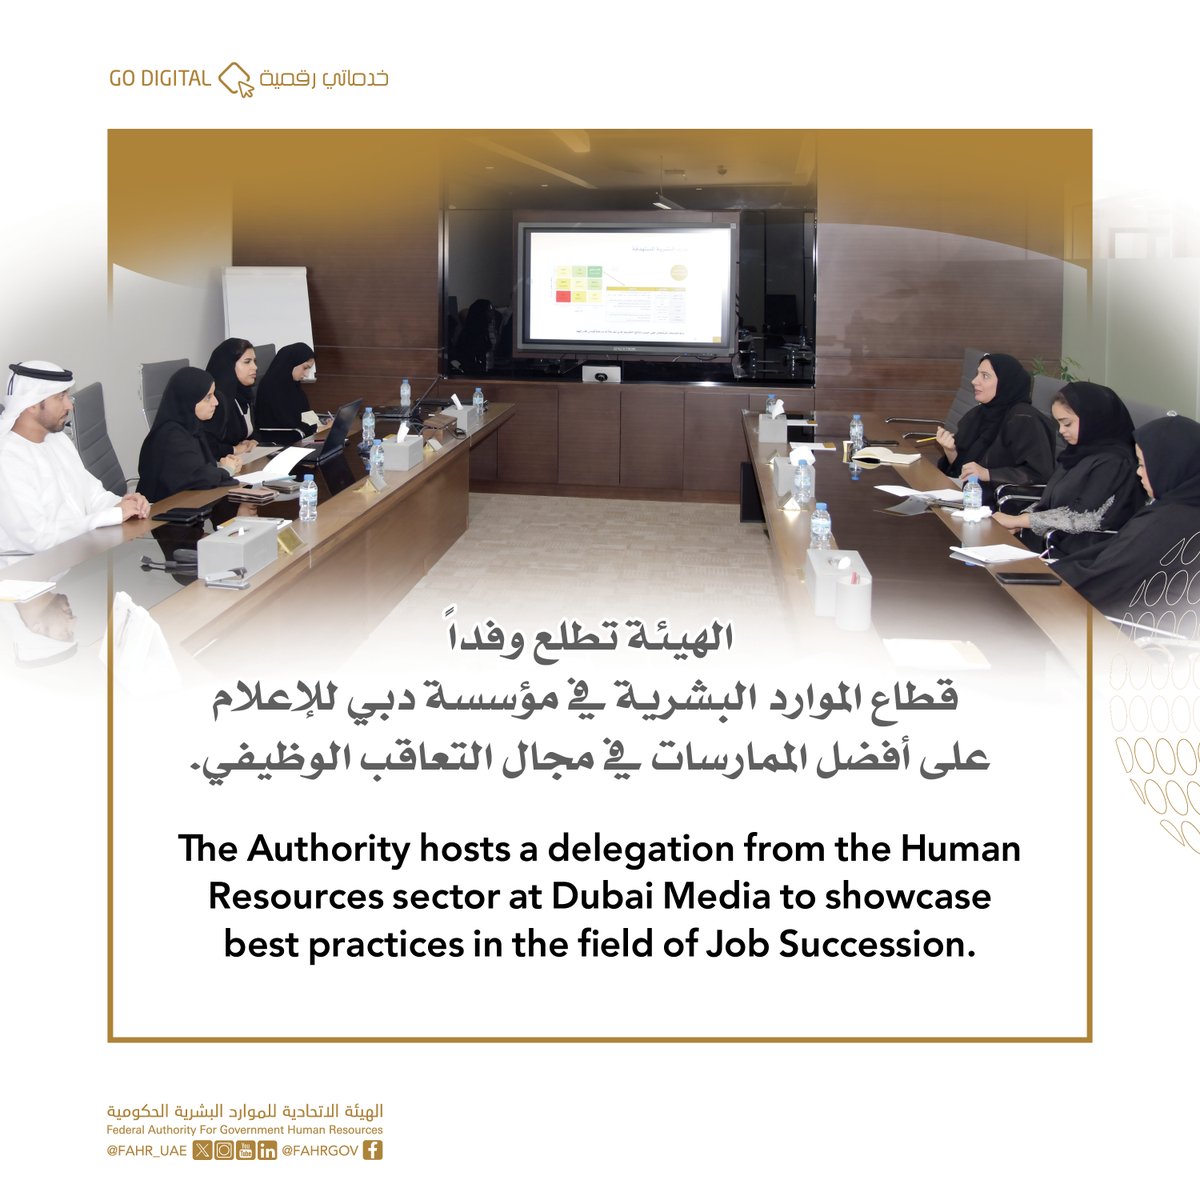 في إطار جهودها لنقل المعرفة، الهيئة تطلع وفداً من مؤسسة دبي للإعلام على أفضل الممارسات المطبقة على مستوى الحكومة الاتحادية، في مجال التخطيط للتعاقب الوظيفي
@dubaimediainc